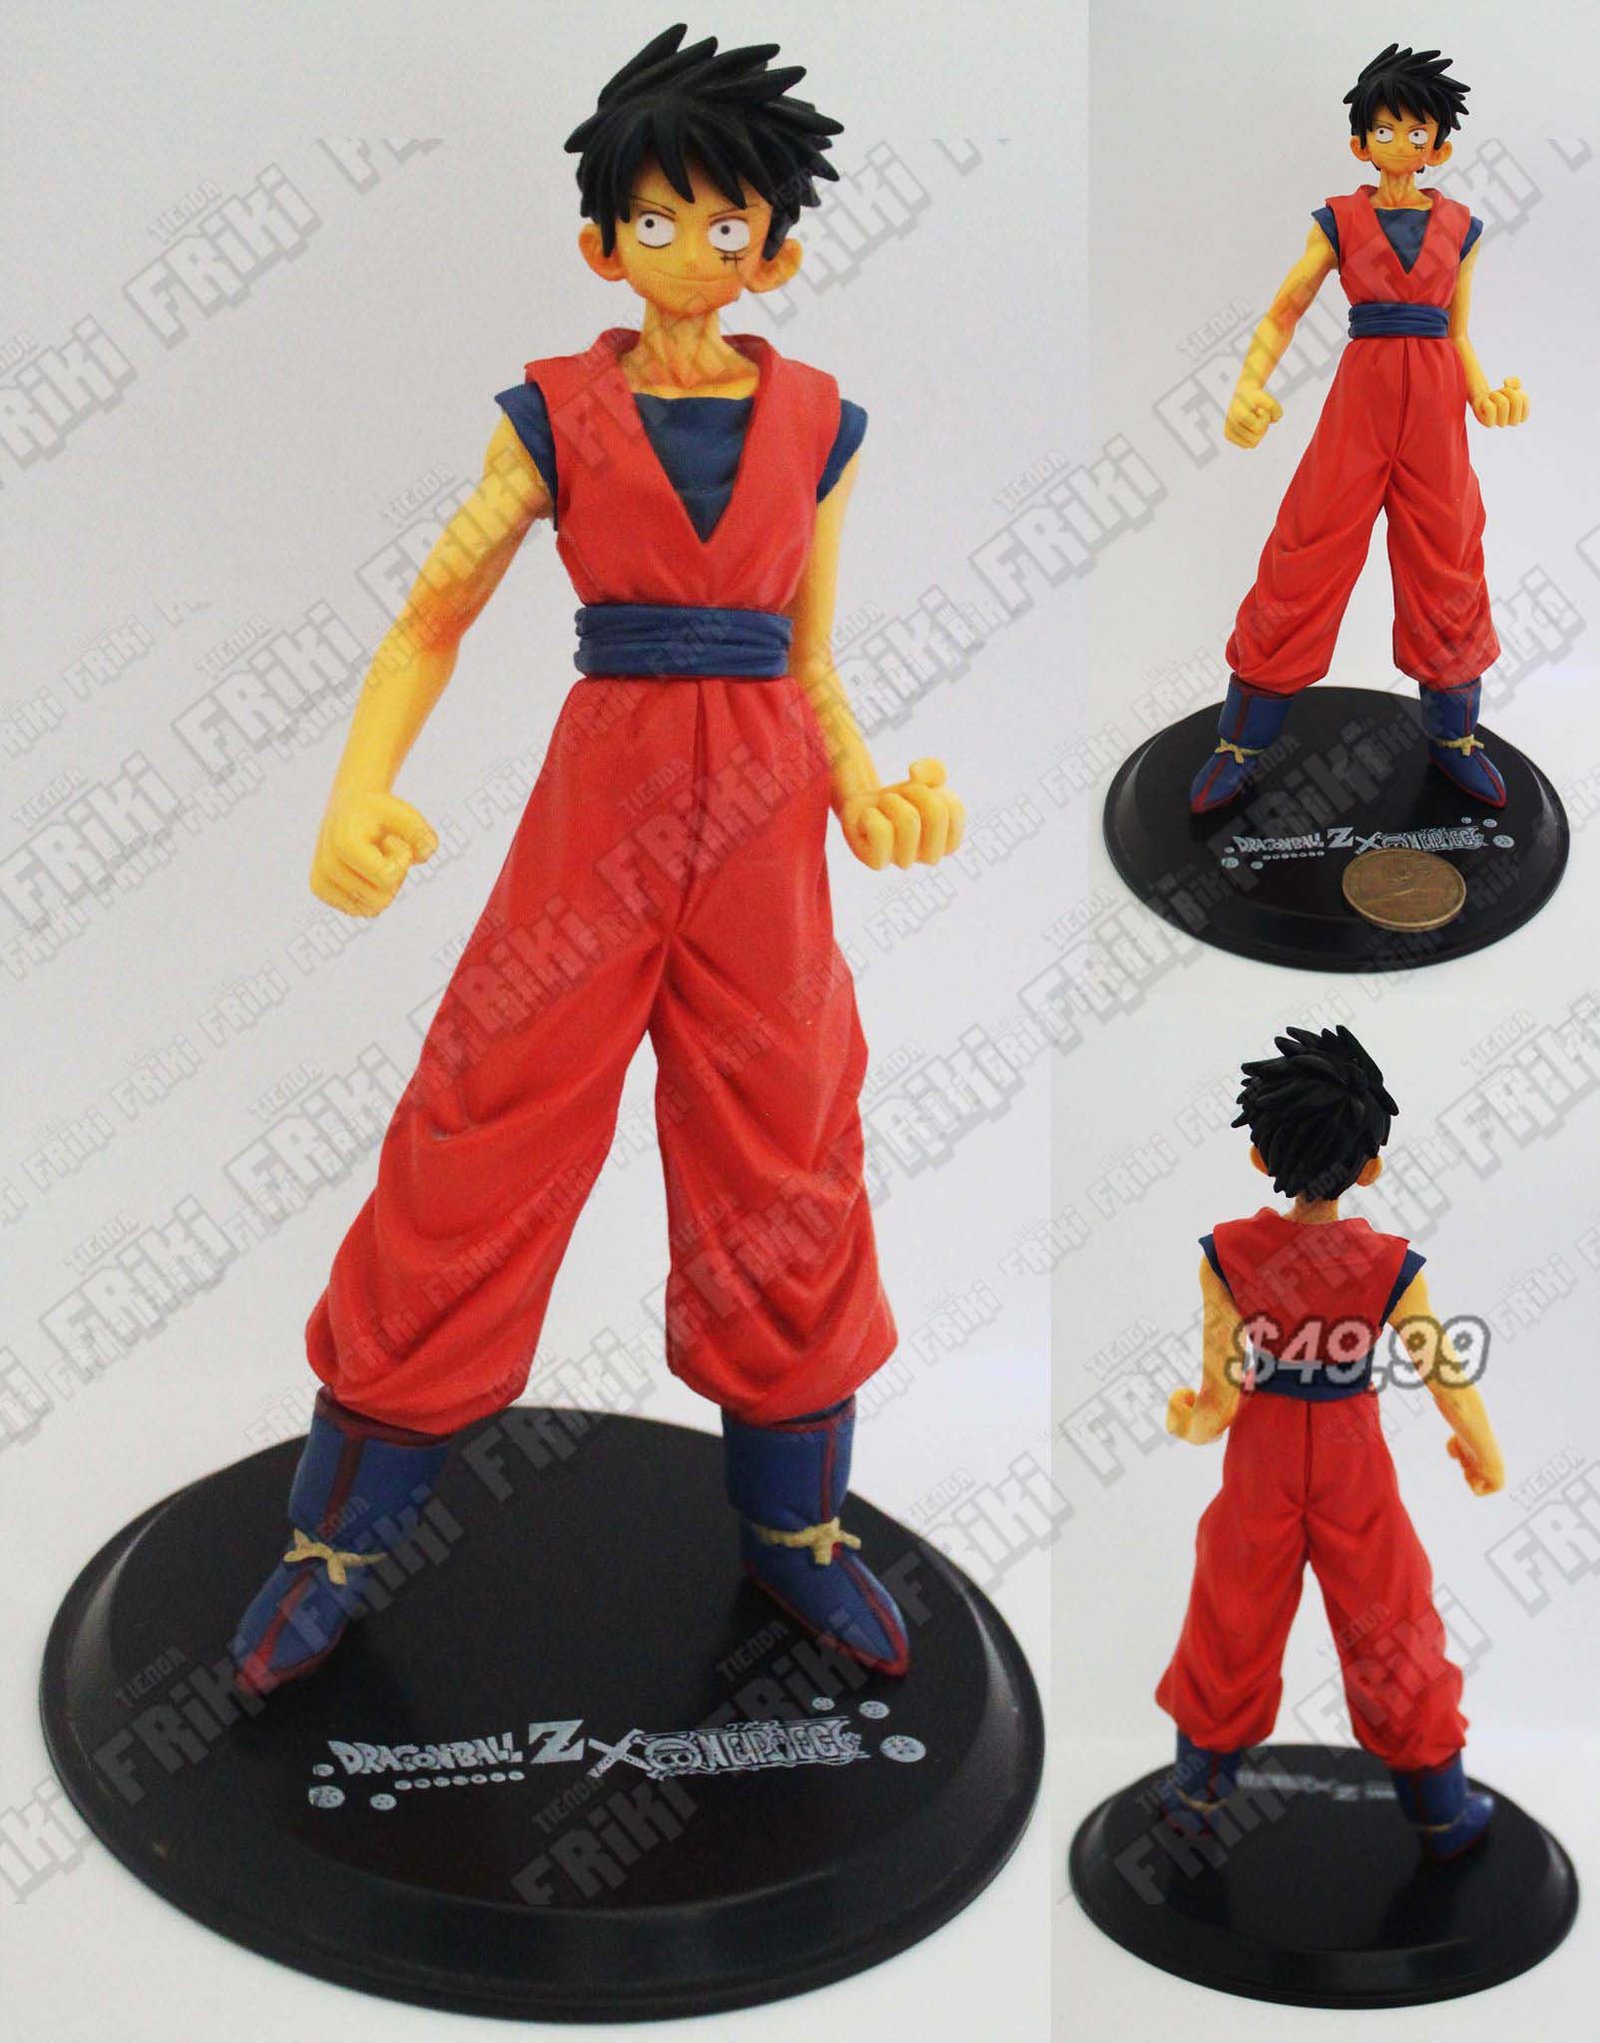 Figura Anime Dragon Ball Luffy x Goku Ecuador Comprar Venden, Bonita Apariencia perfecta para coleccionistas y fans de la serie, practica, Hermoso material de plástico Color como en la foto Estado nuevo